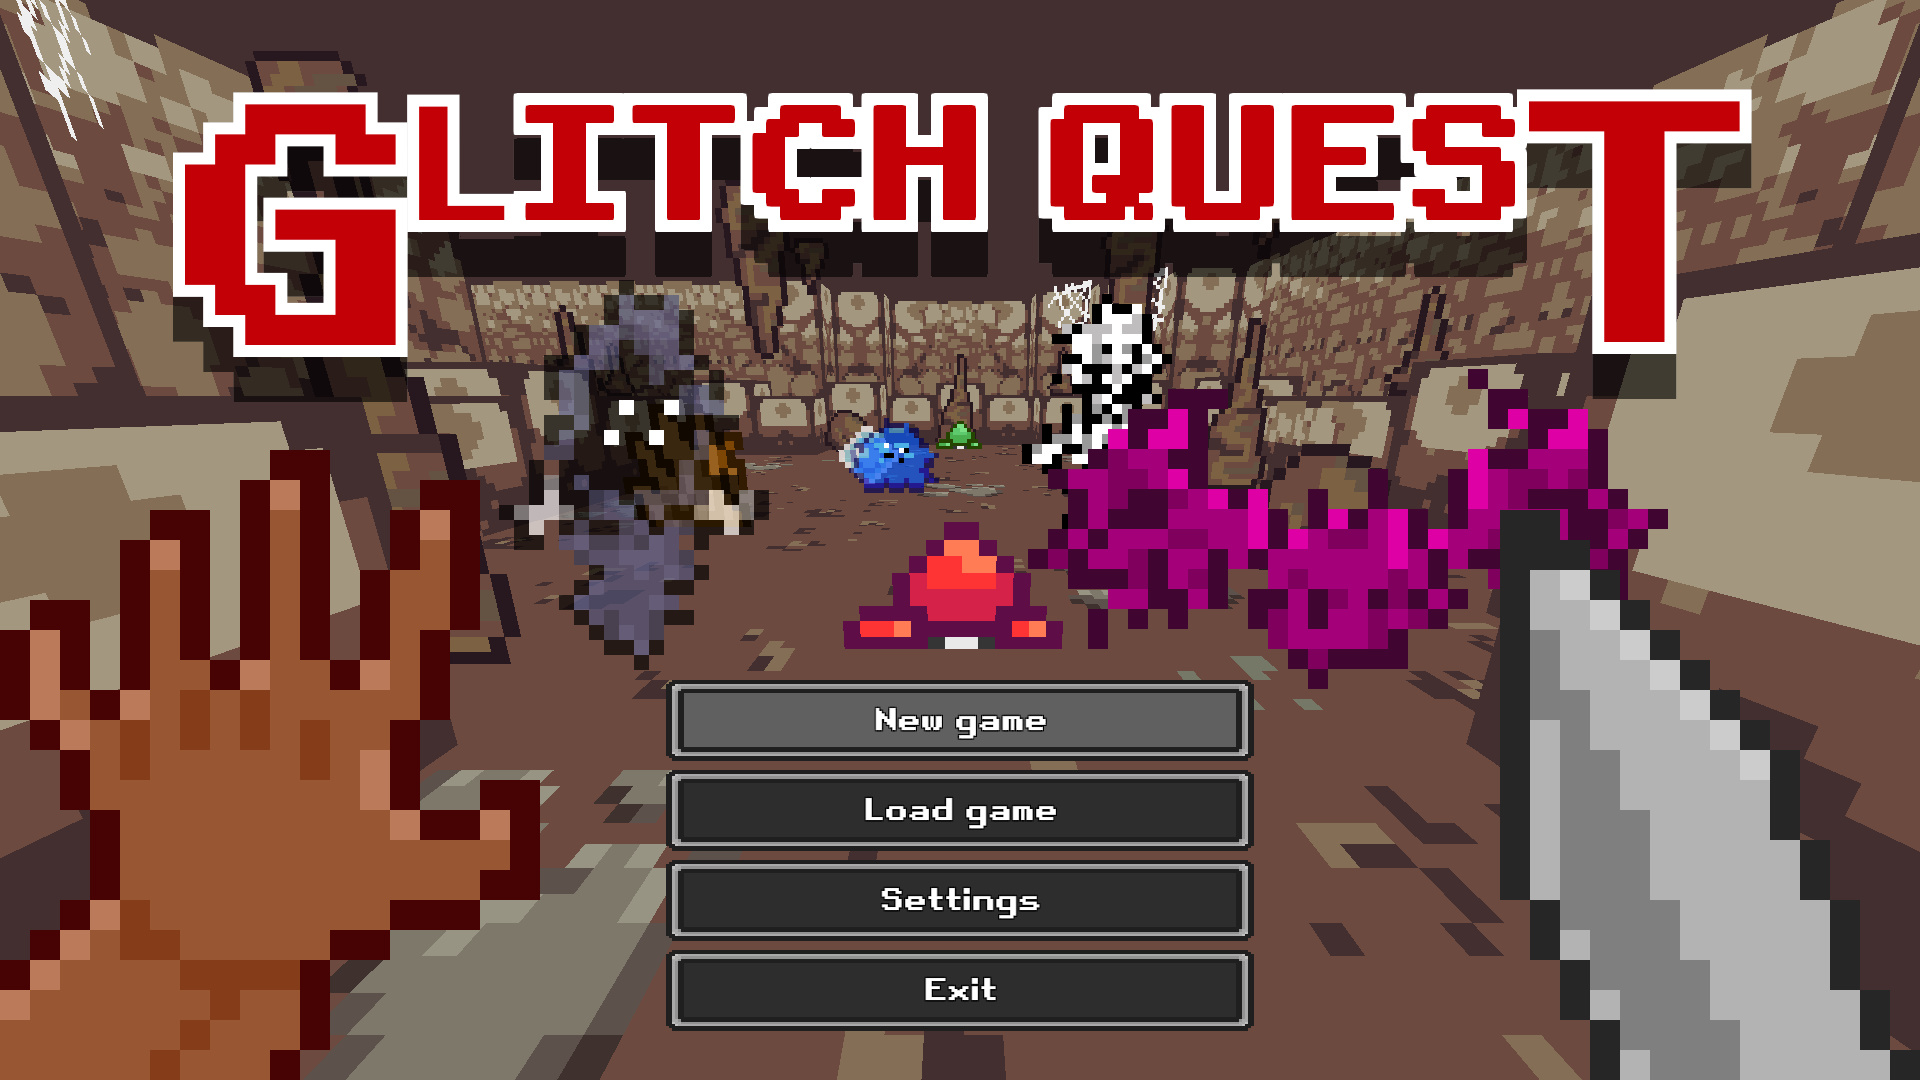 Glitch Quest